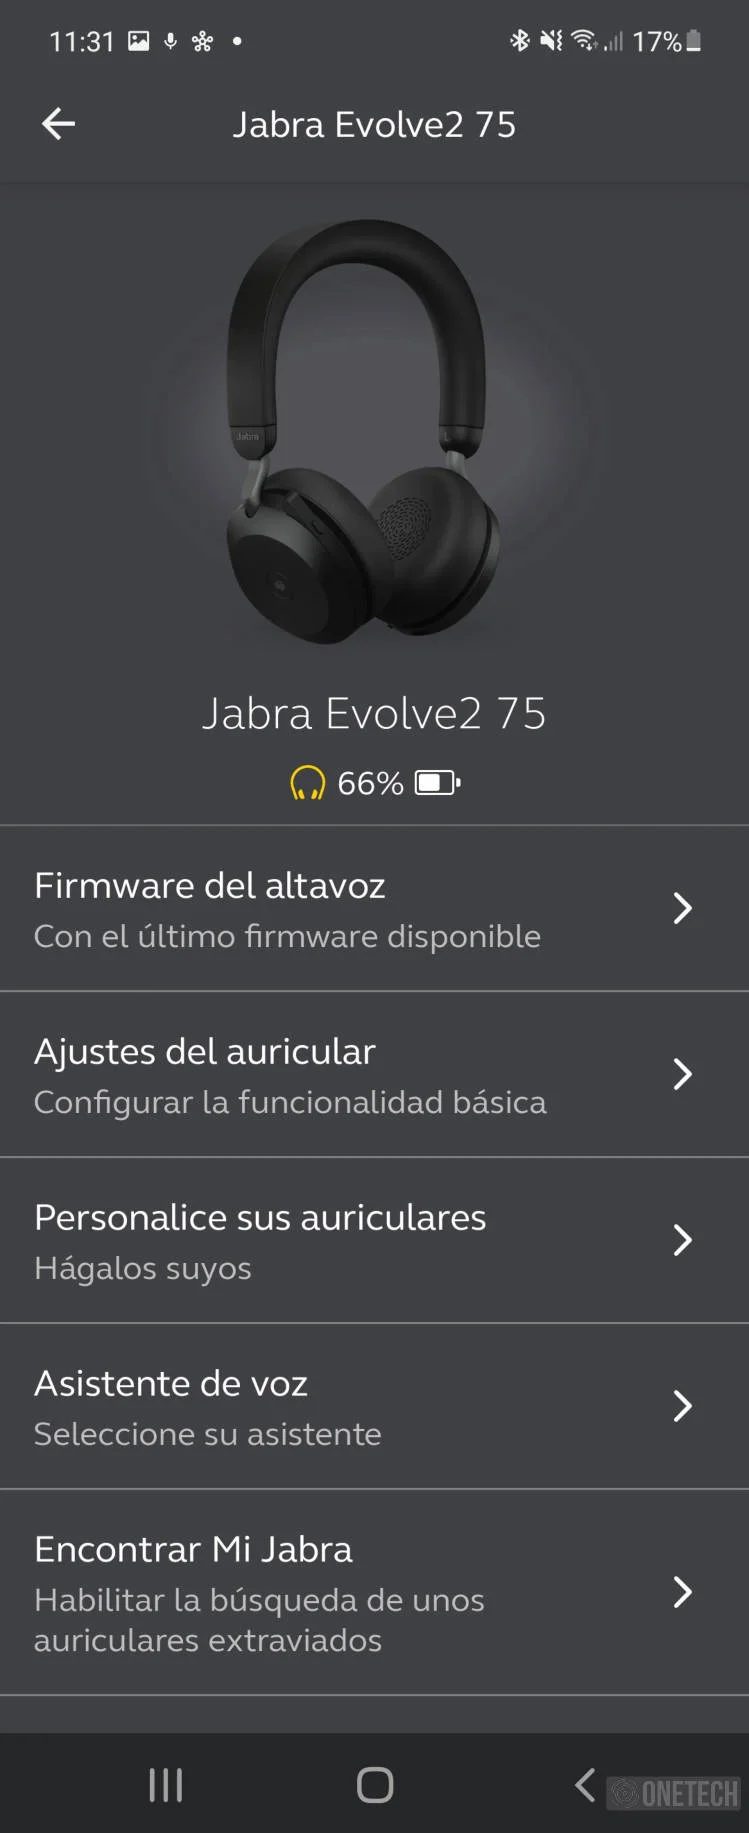 Jabra Evolve2 75, unos auriculares para la oficina y para fuera de ella - Análisis 26